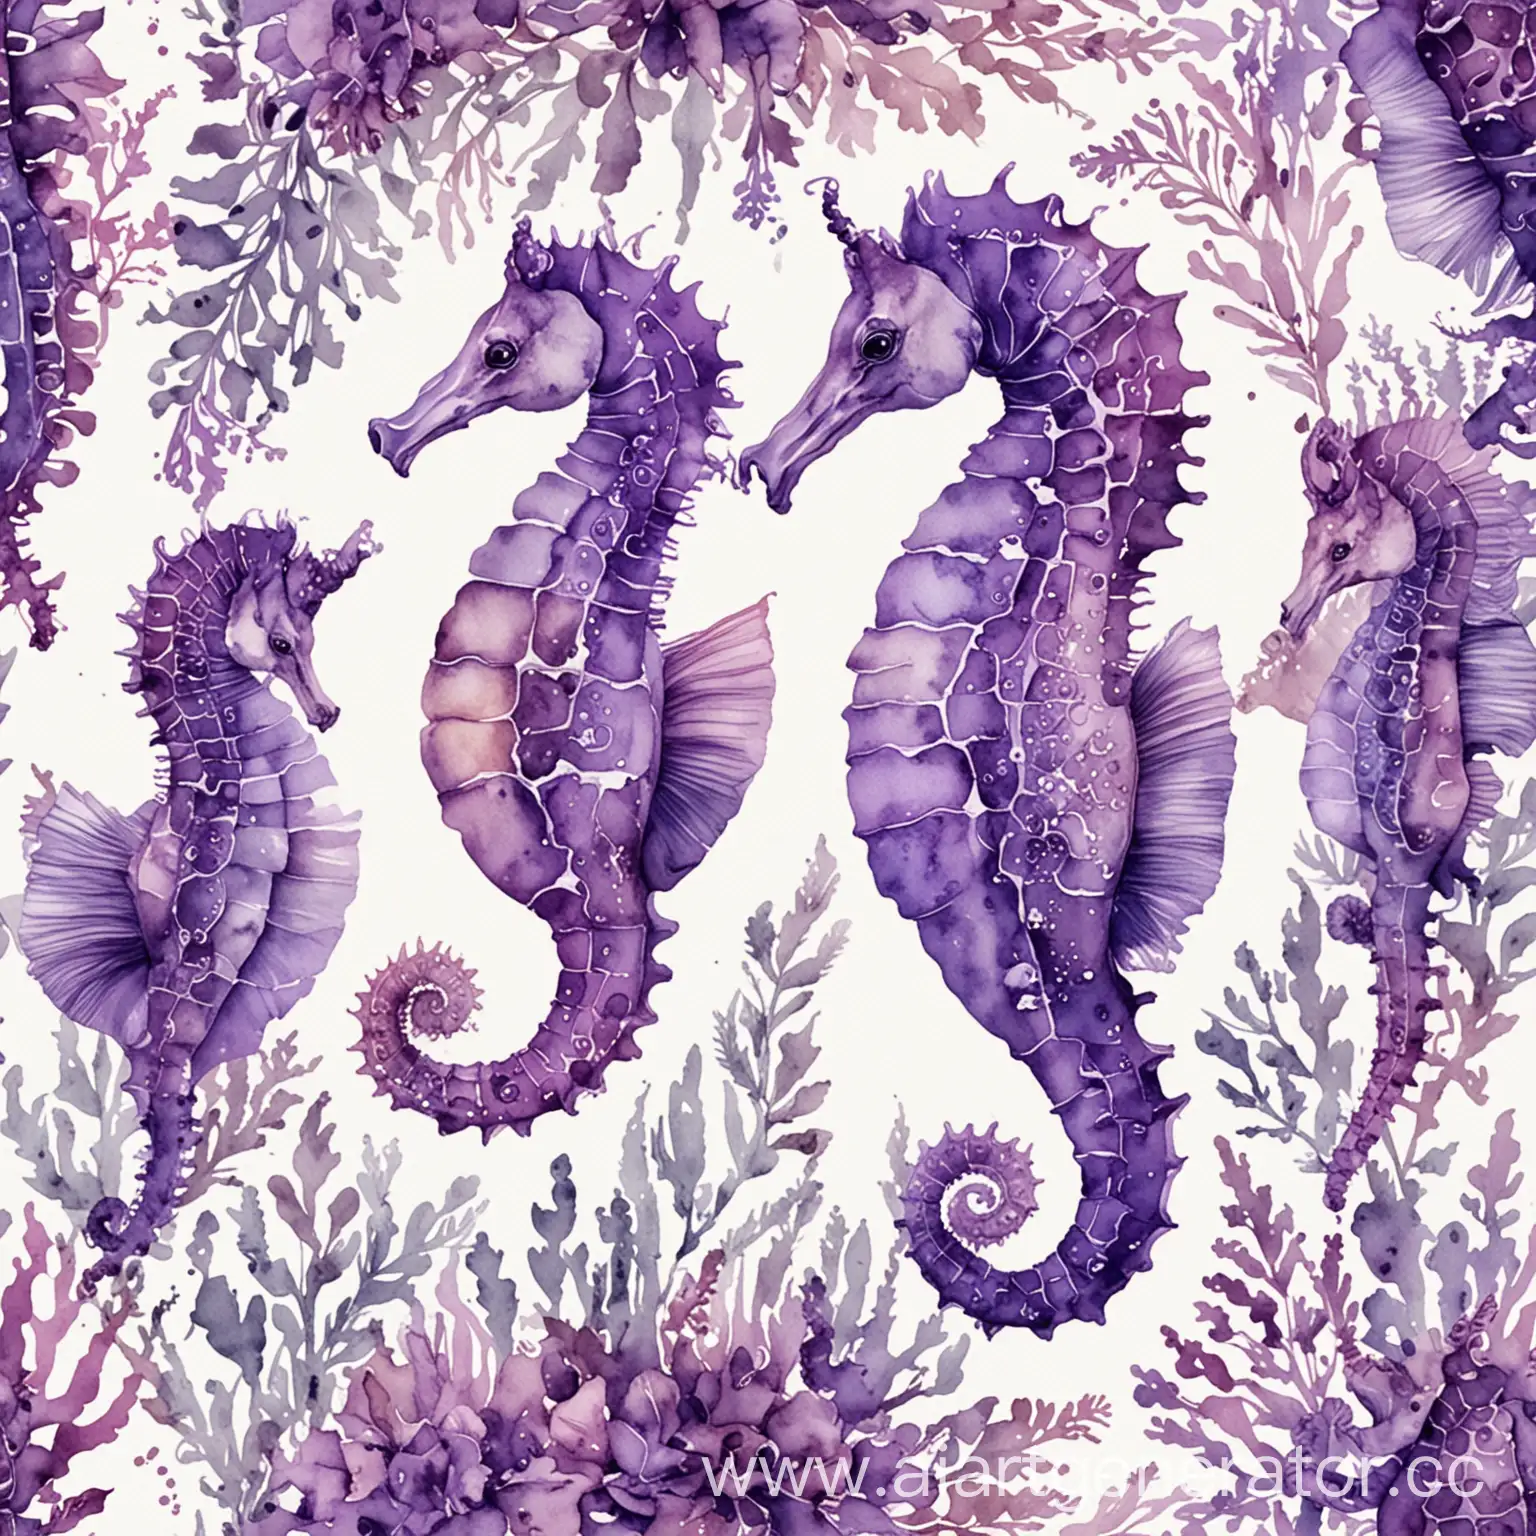 монокомпозиция из маленьких морских коньков в фиолетовых оттенках акварелью